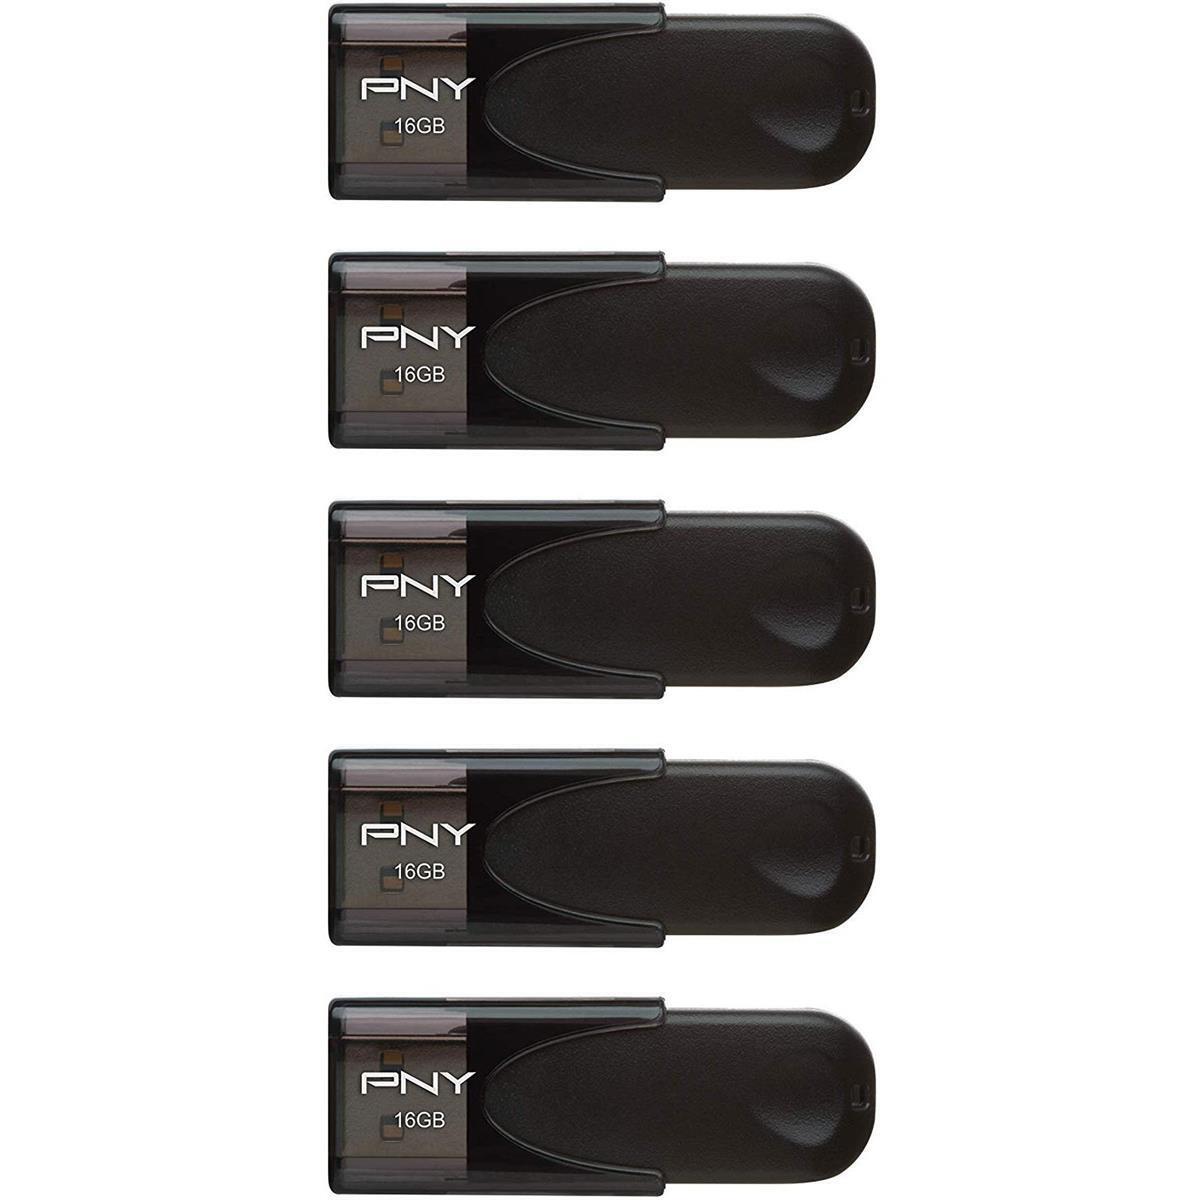 PNY Technologies Attache 4 16GB USB 2.0 Flash Drive, 5-Pack #P-FD16GX5ATT4-EF